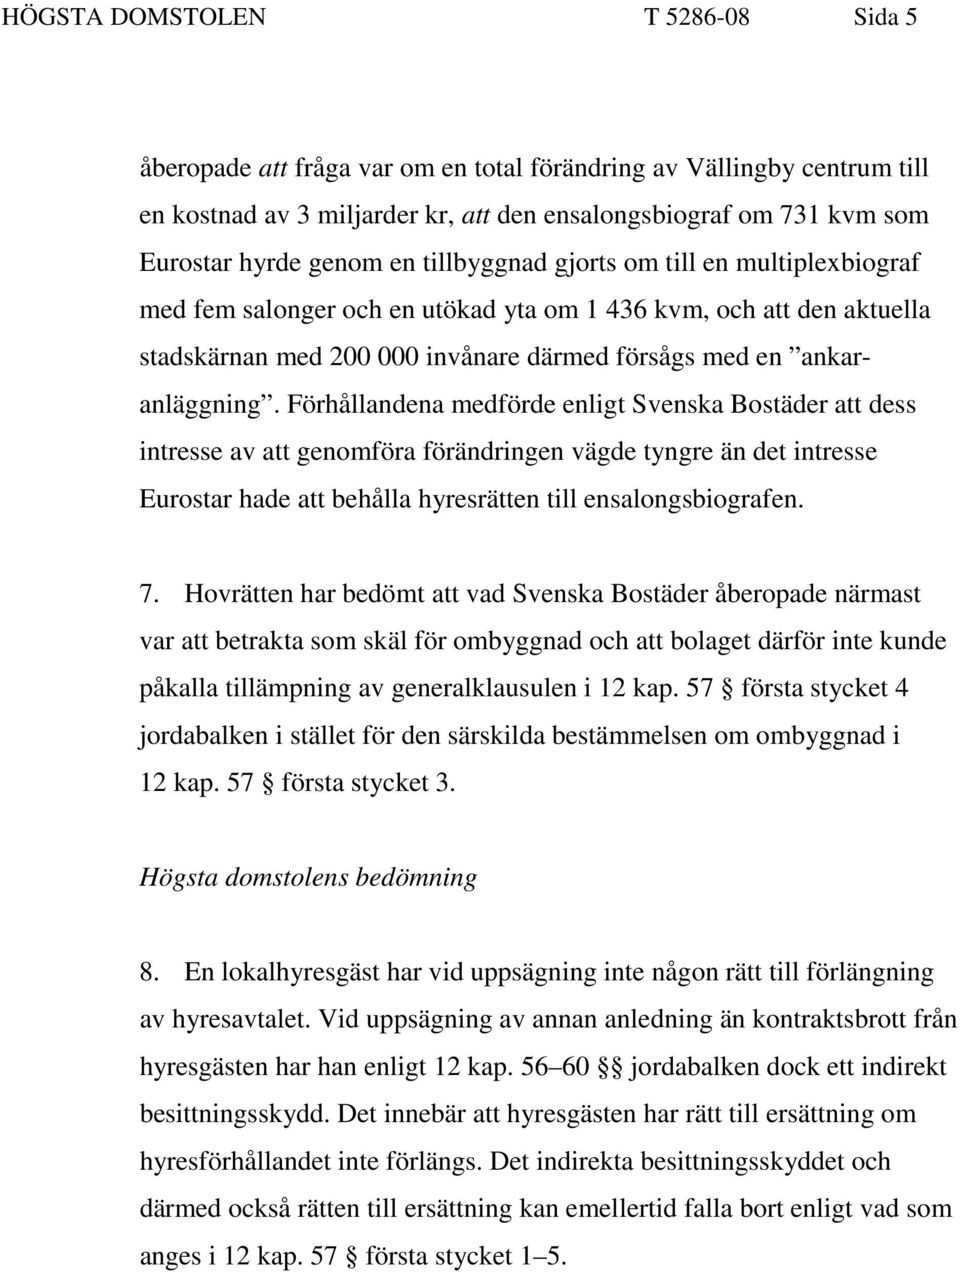 Förhållandena medförde enligt Svenska Bostäder att dess intresse av att genomföra förändringen vägde tyngre än det intresse Eurostar hade att behålla hyresrätten till ensalongsbiografen. 7.